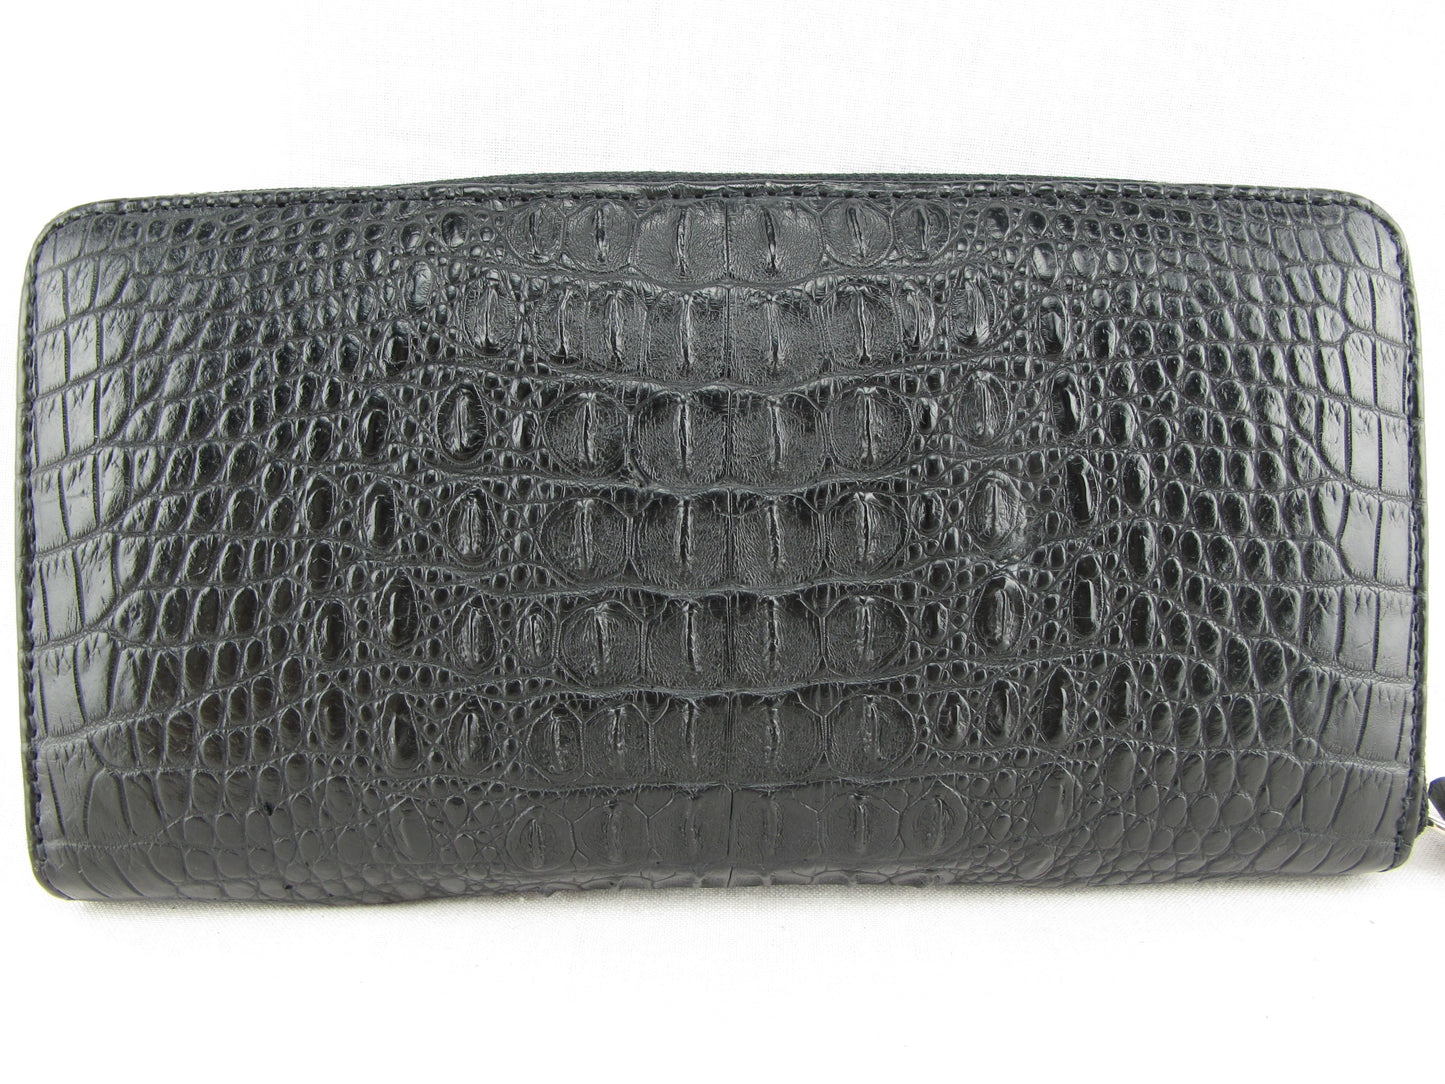 Genuine Crocodile Hornback Skin Leather Zip Around Clutch Wallet Purse